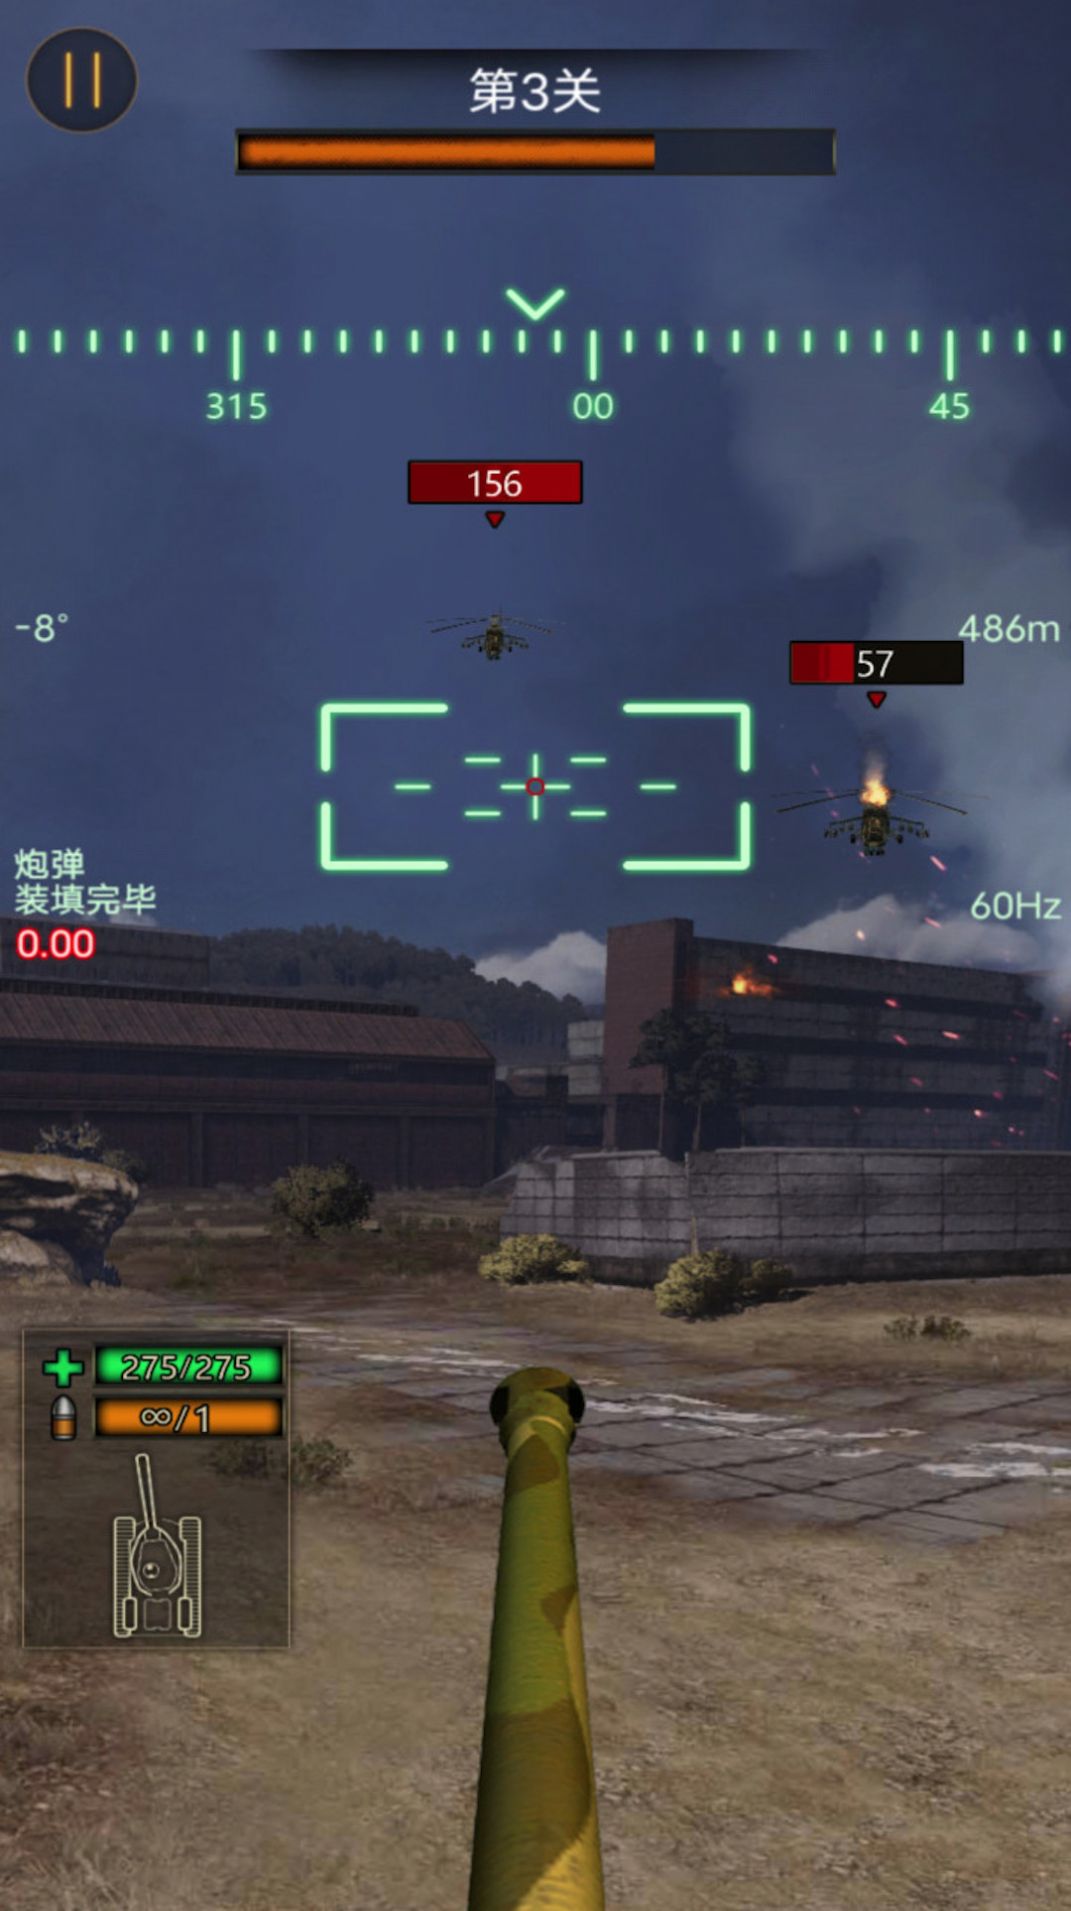 热血坦克大战游戏下载,热血坦克大战游戏官方手机版 v1.0.0.24